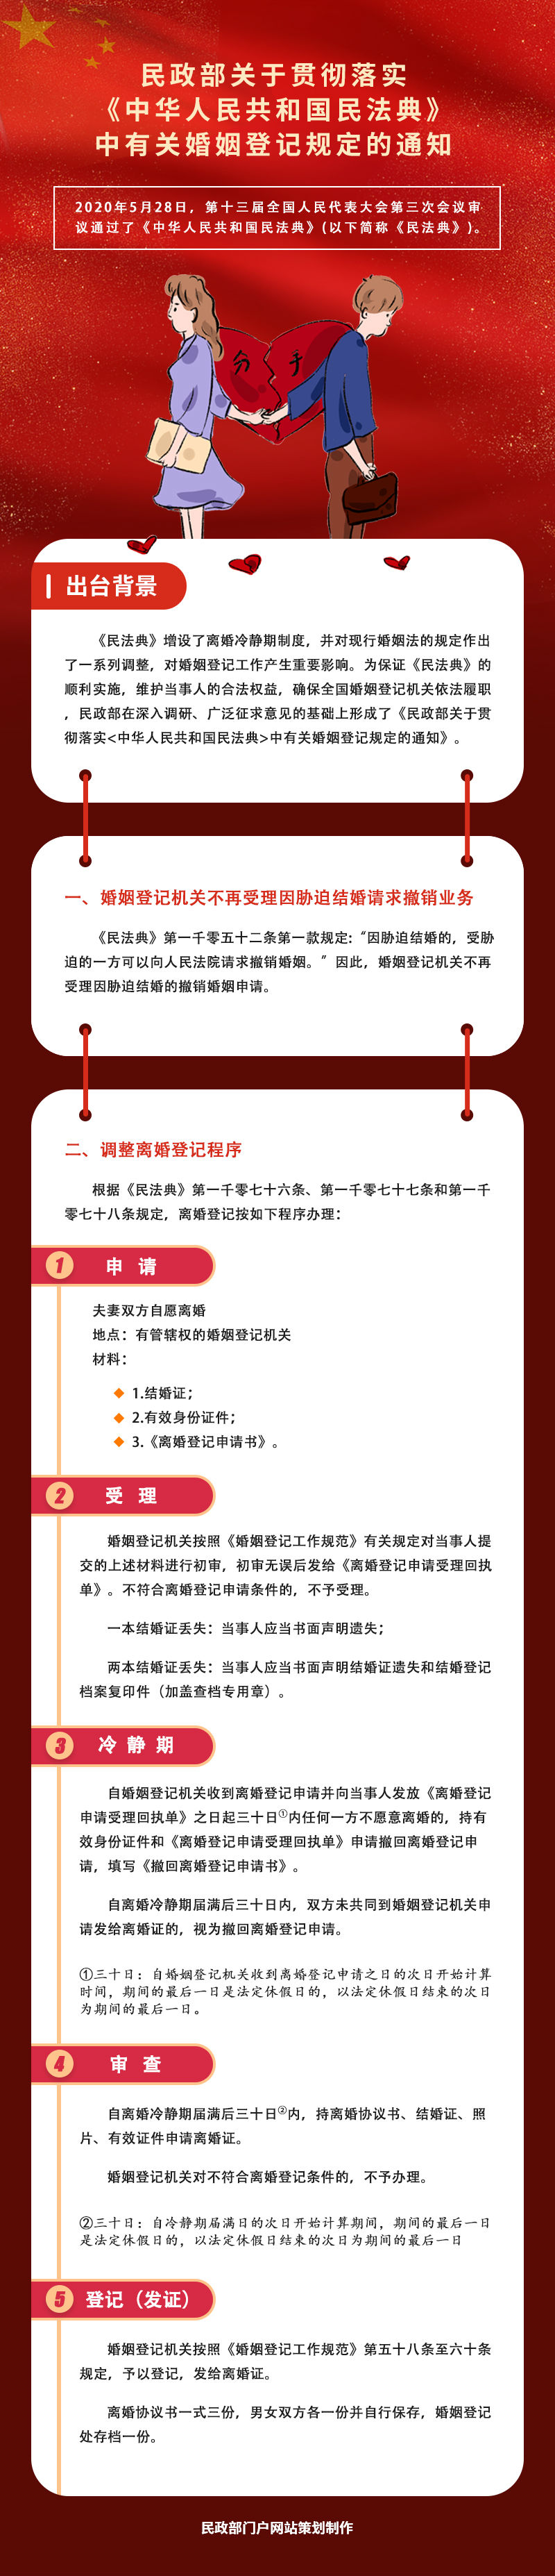 图解：民政部关于贯彻落实《中华人民共和国民法典》中有关婚姻登记规定的通知.jpg